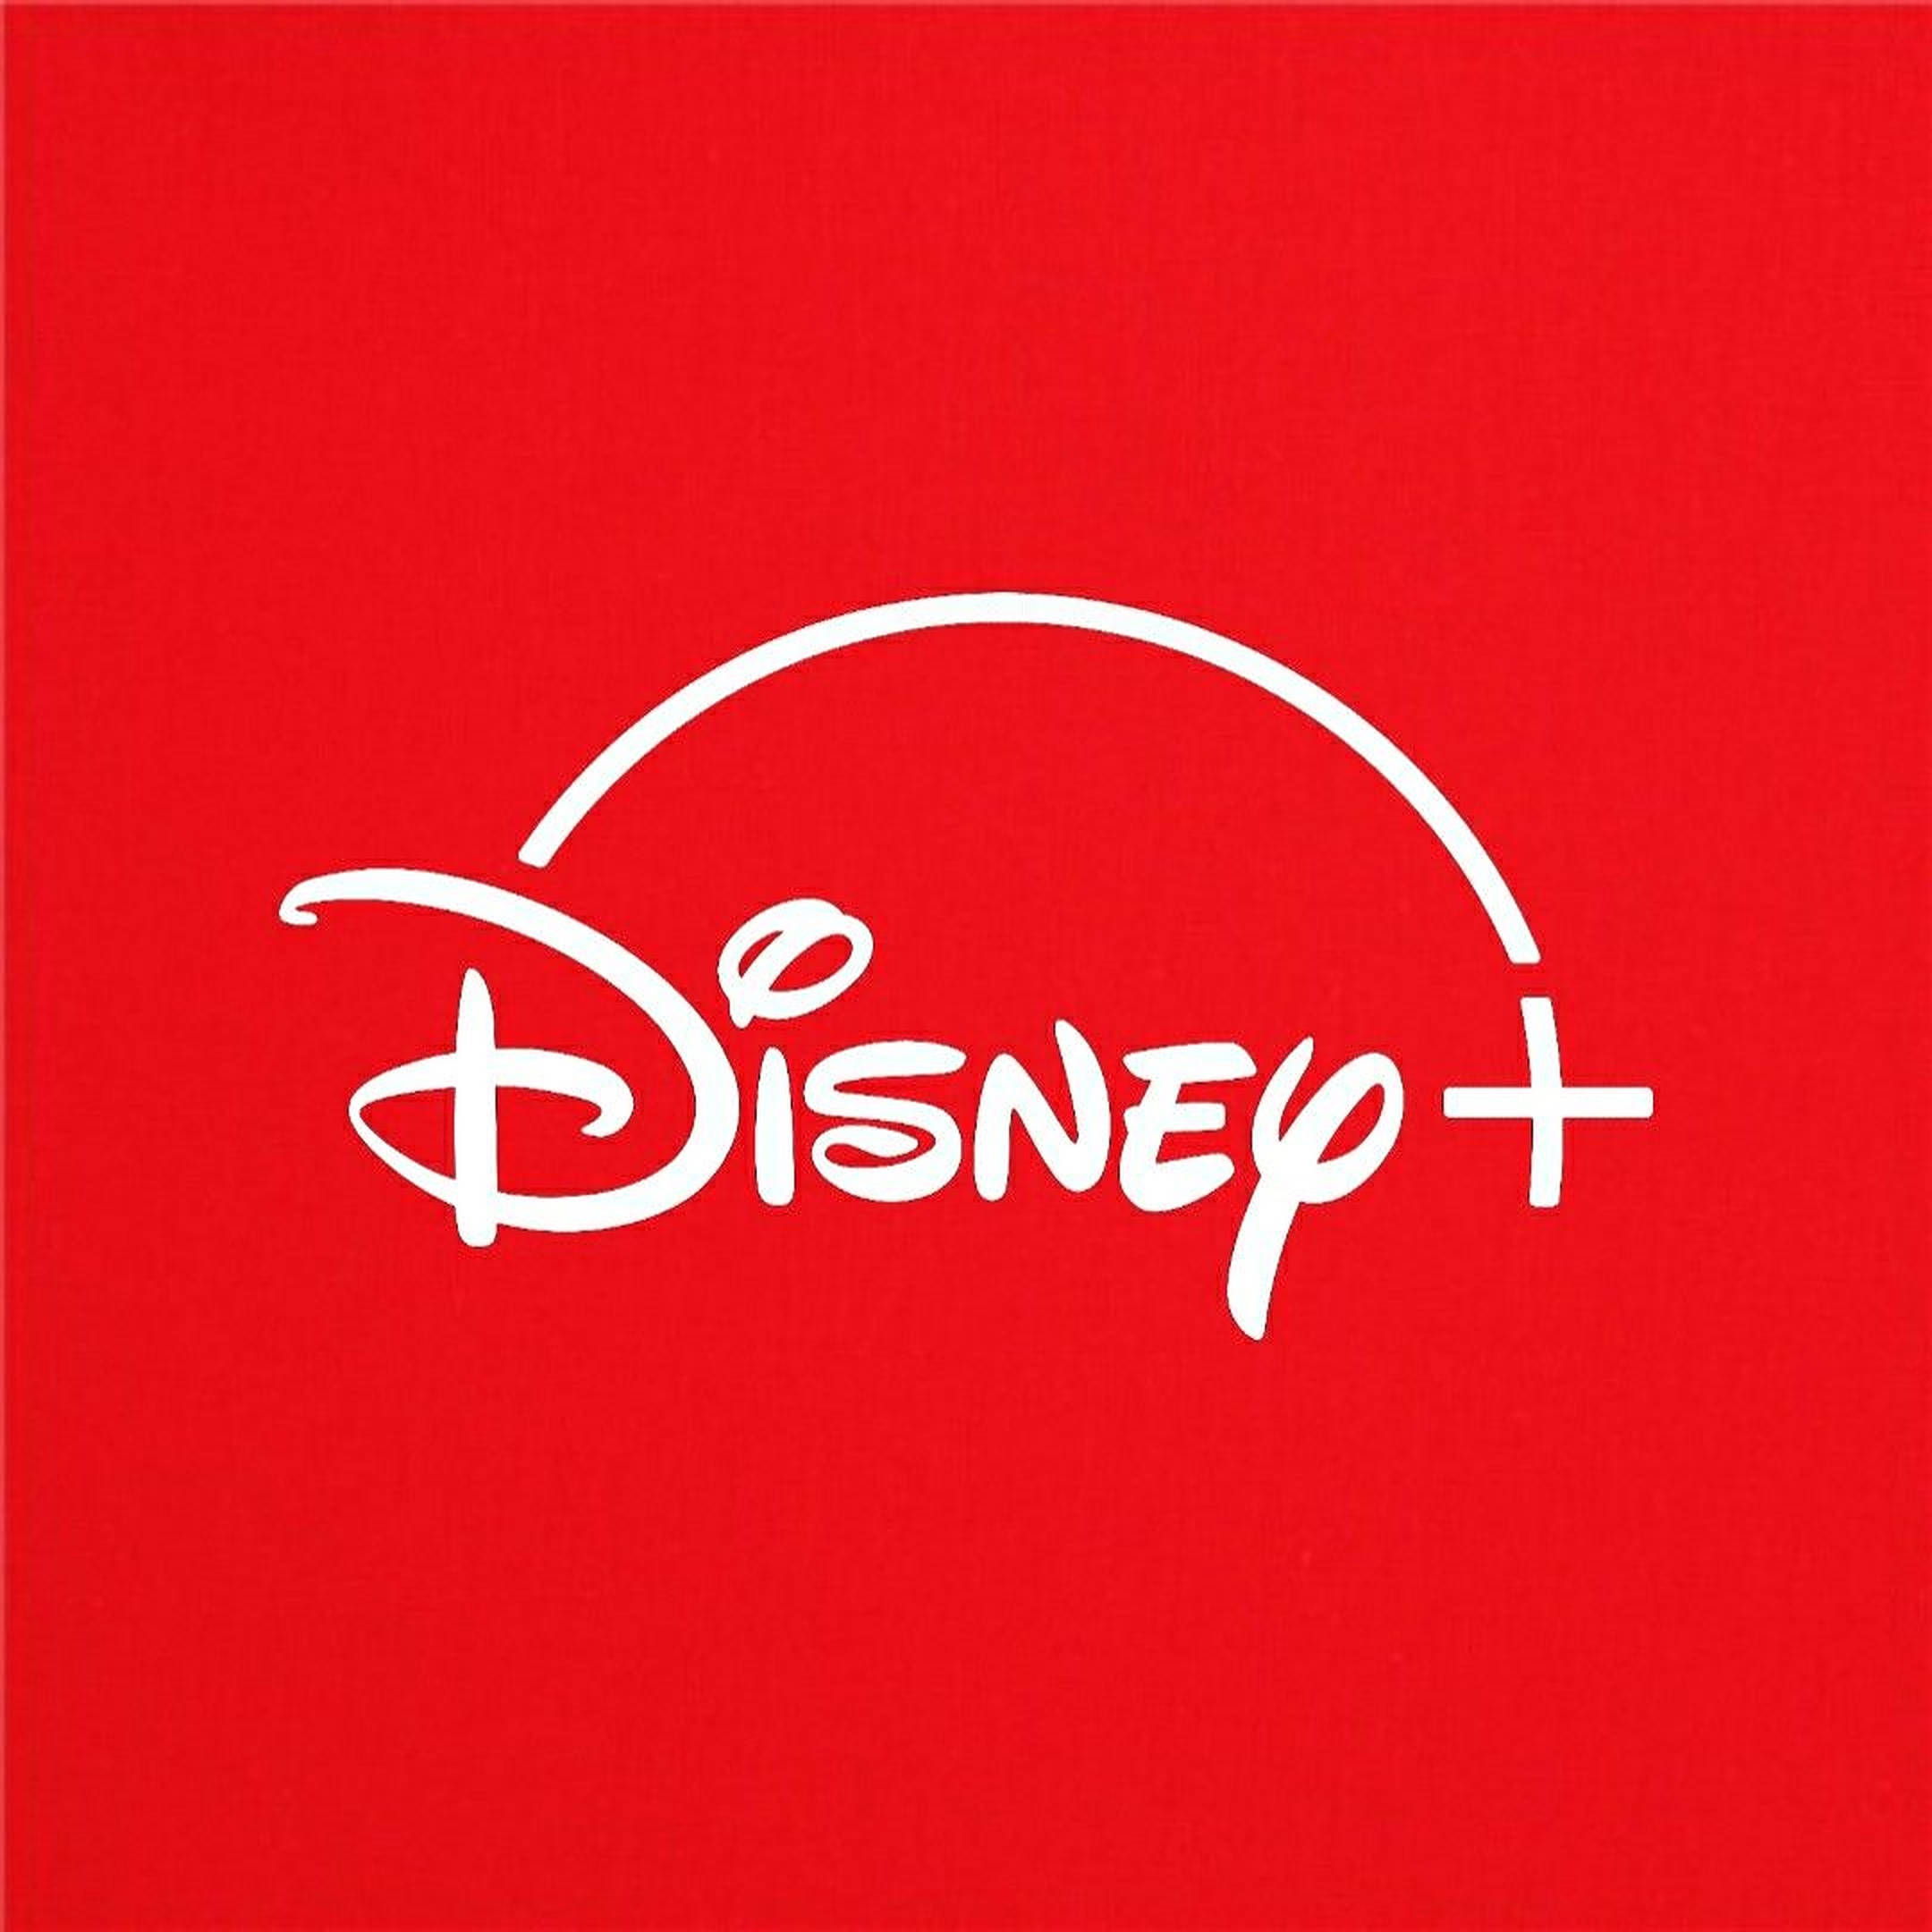 Download Disney Plus Red Logo Wallpaper 